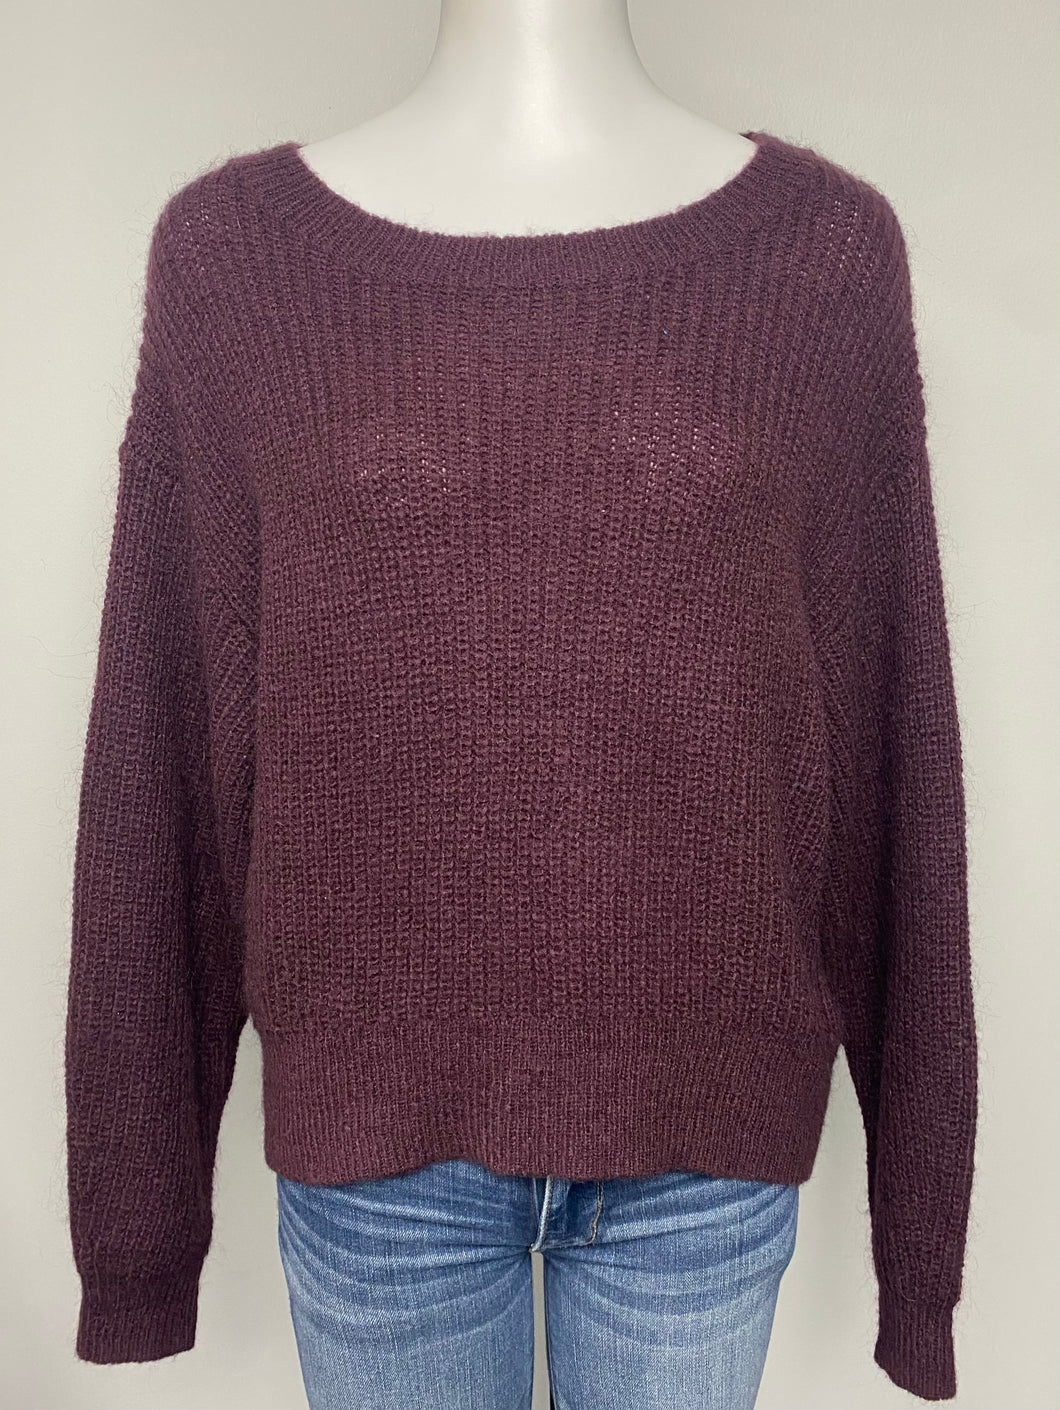 H&M Knit Sweater- (XS)